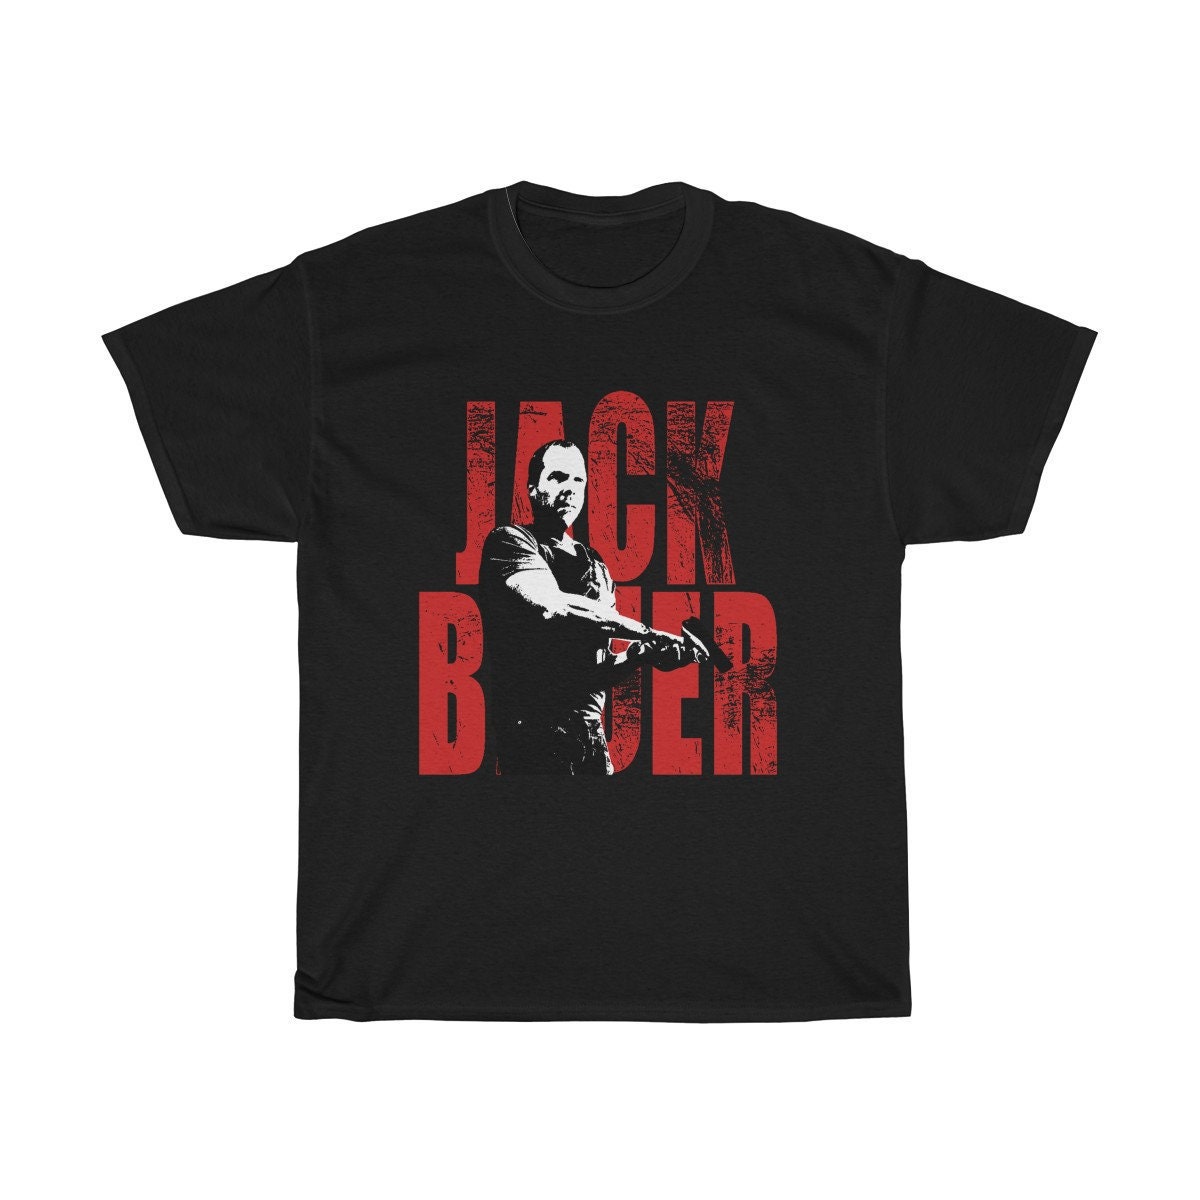 Jack Bauer T Shirt Action Superhero 24 | Etsy